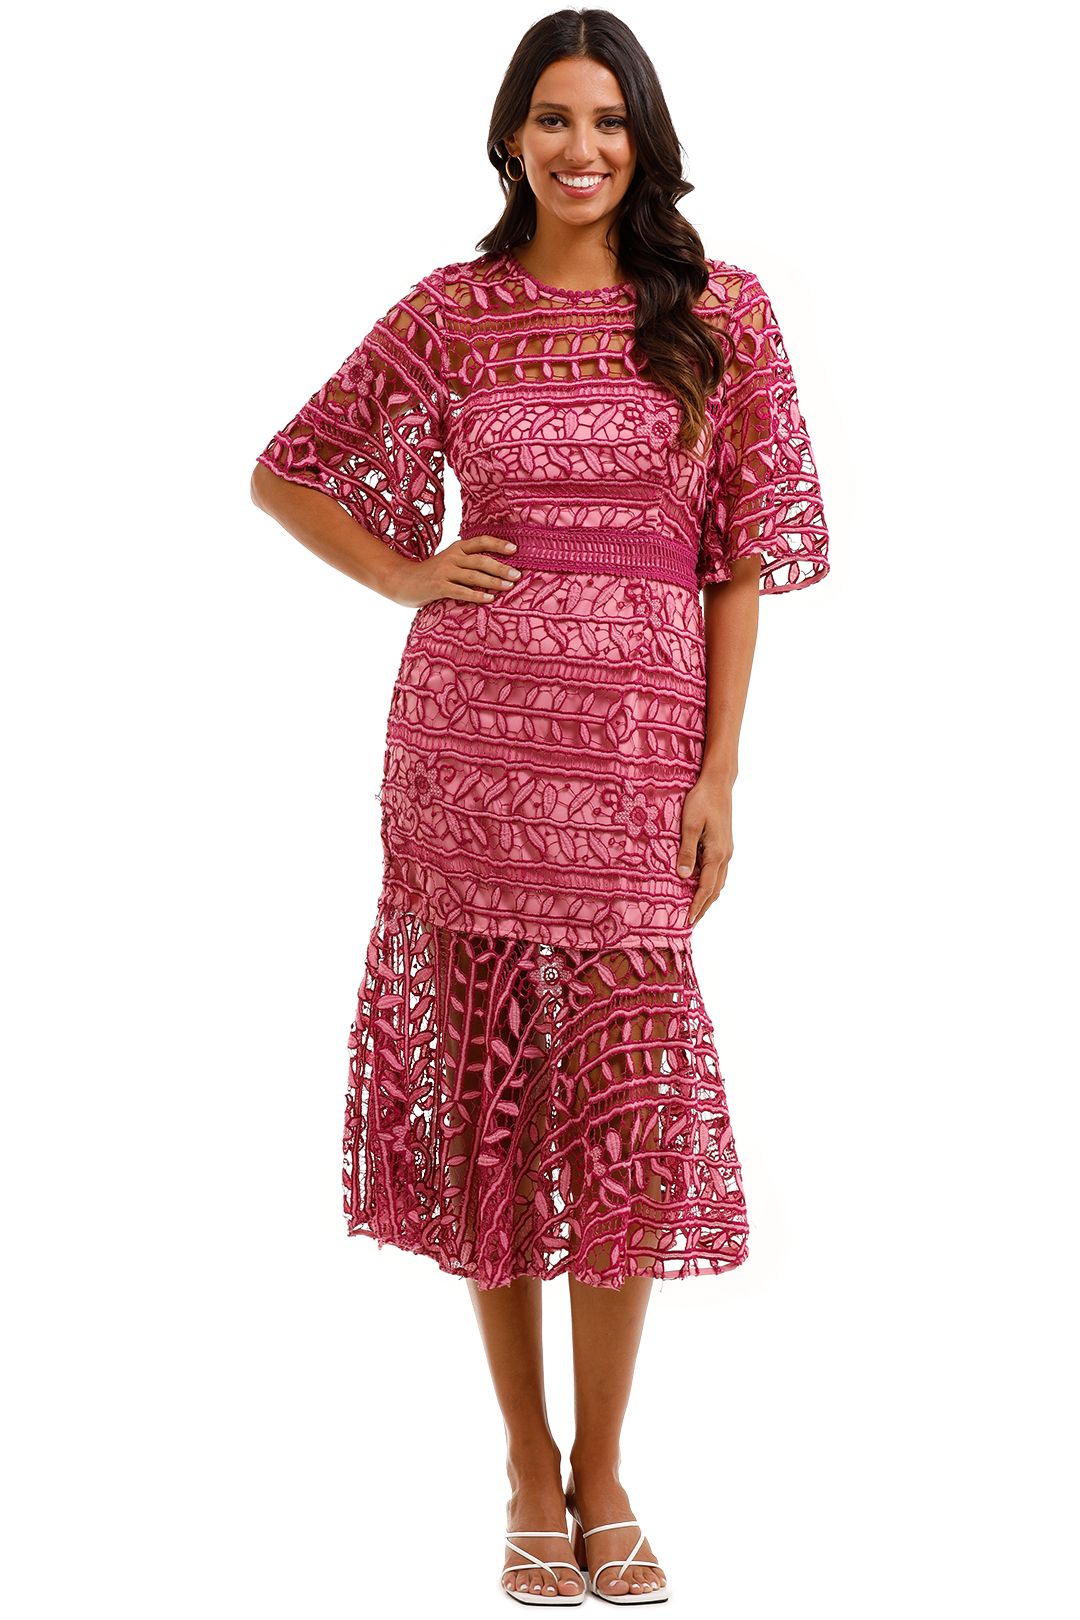 Talulah Caprice Midi Dress Pink Multi Leaves Lace